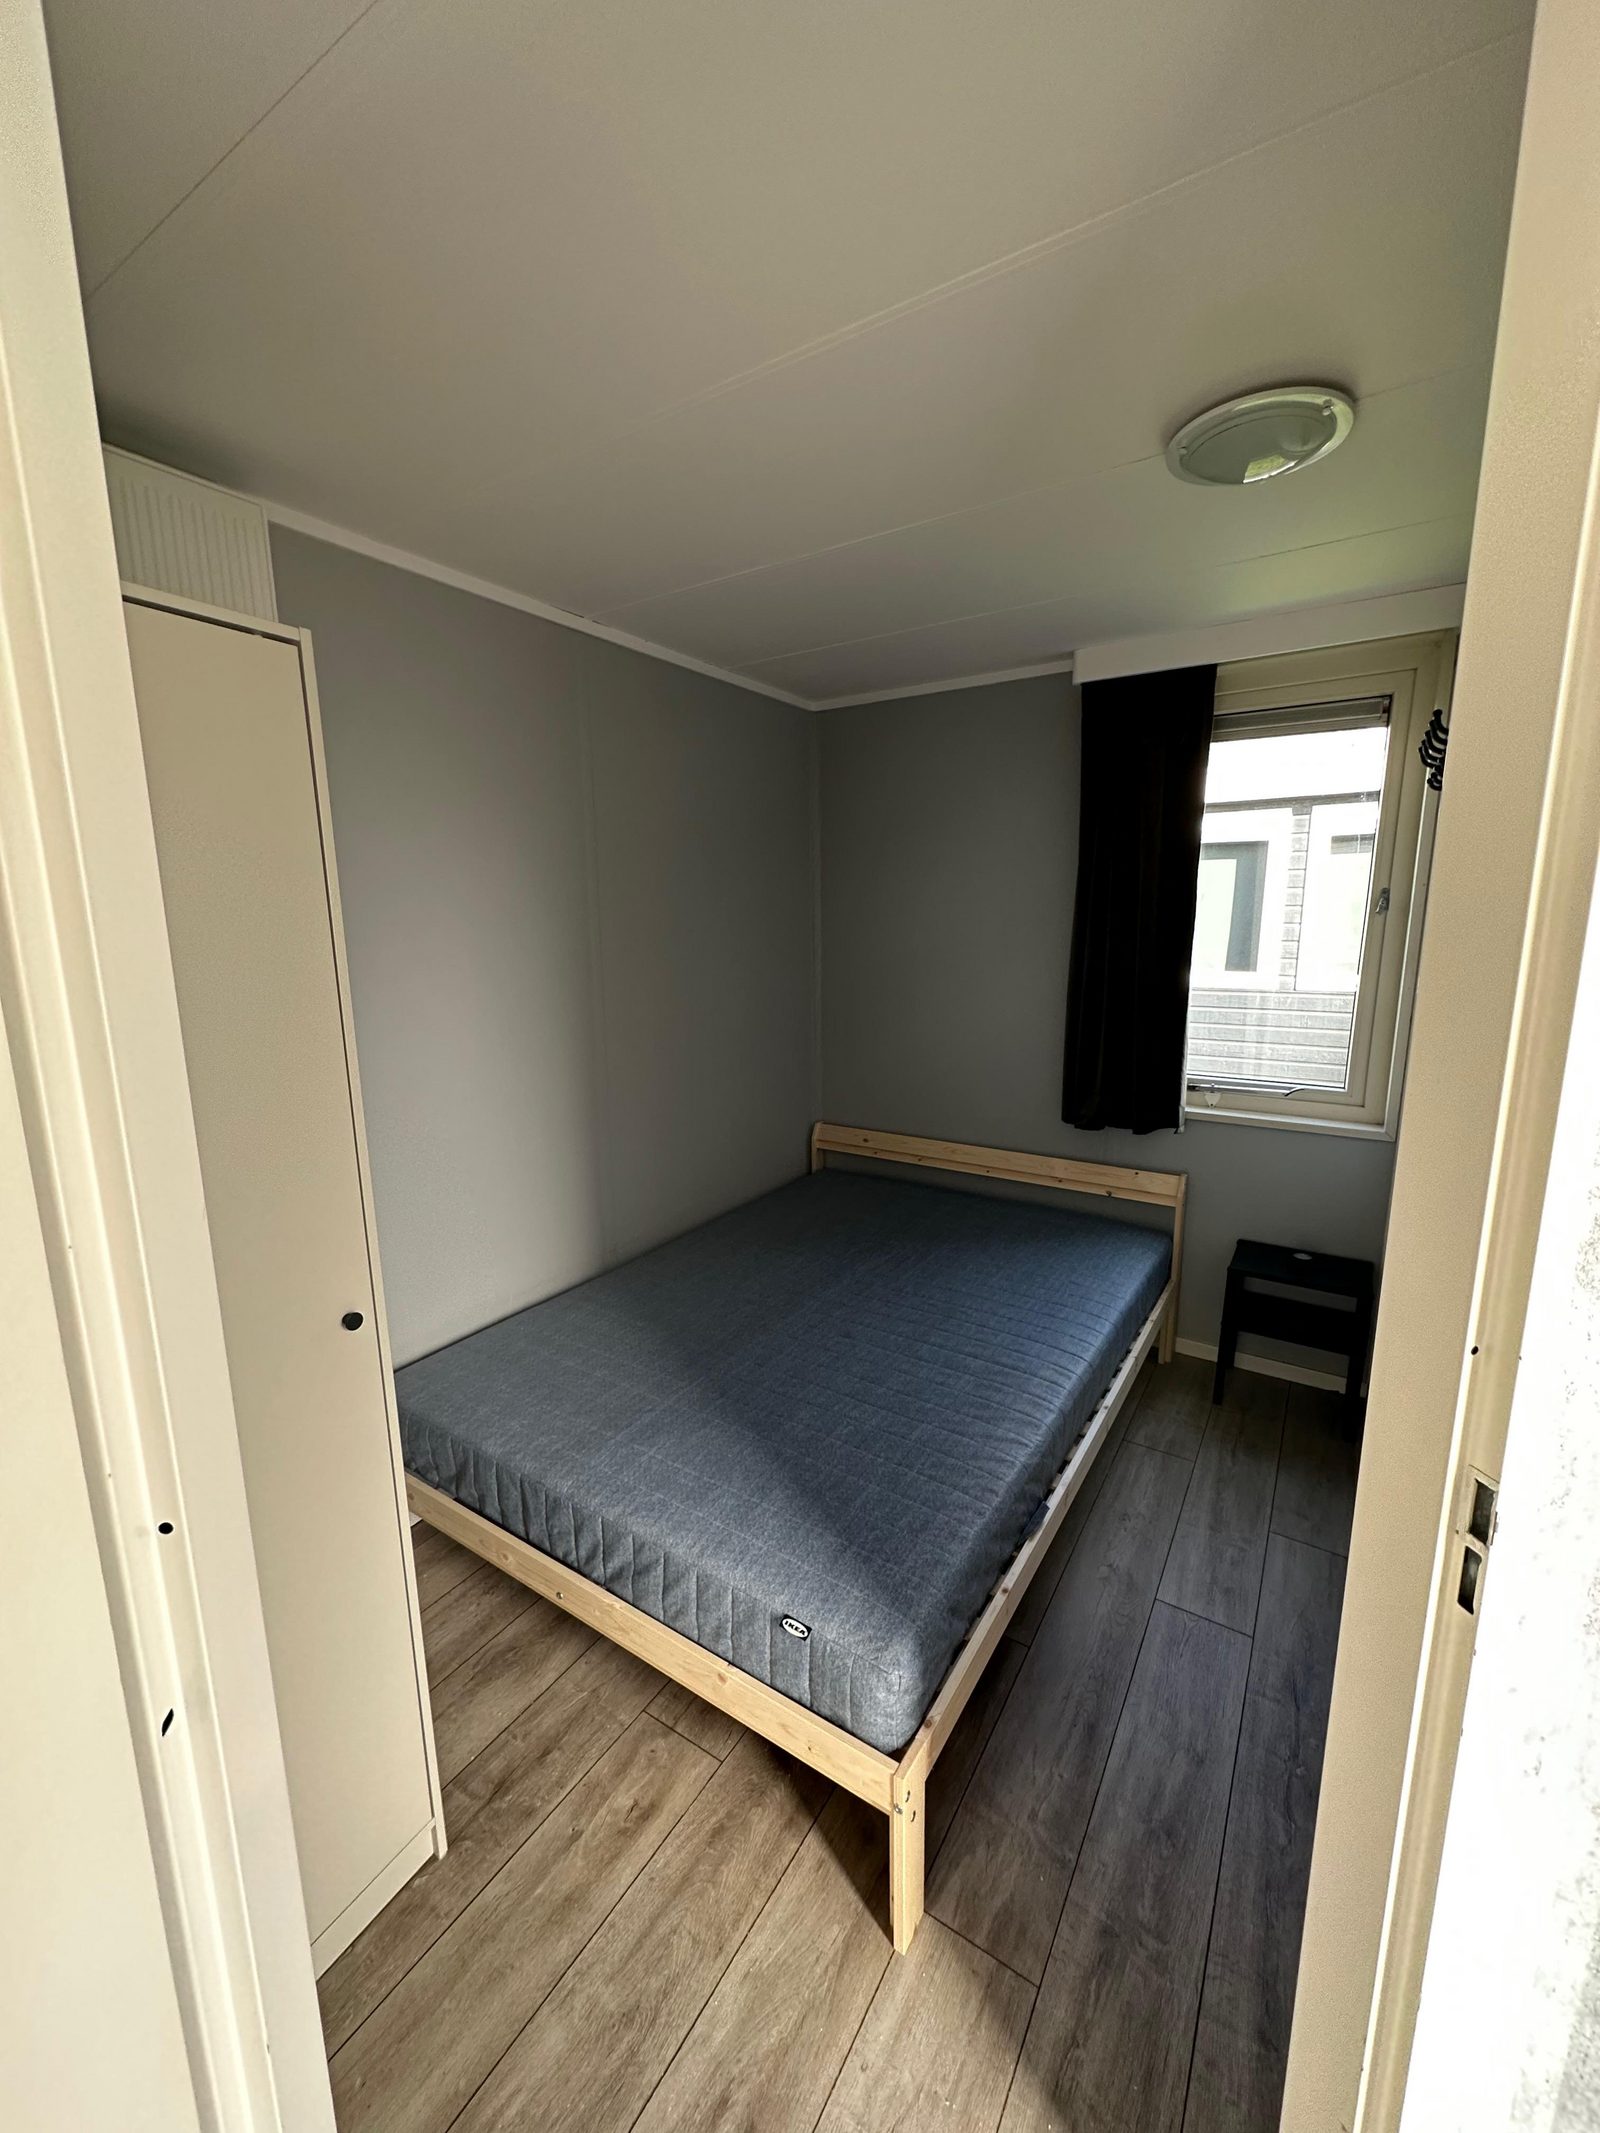 435 Chalet met 3 slaapkamers € 75.000 kosten koper